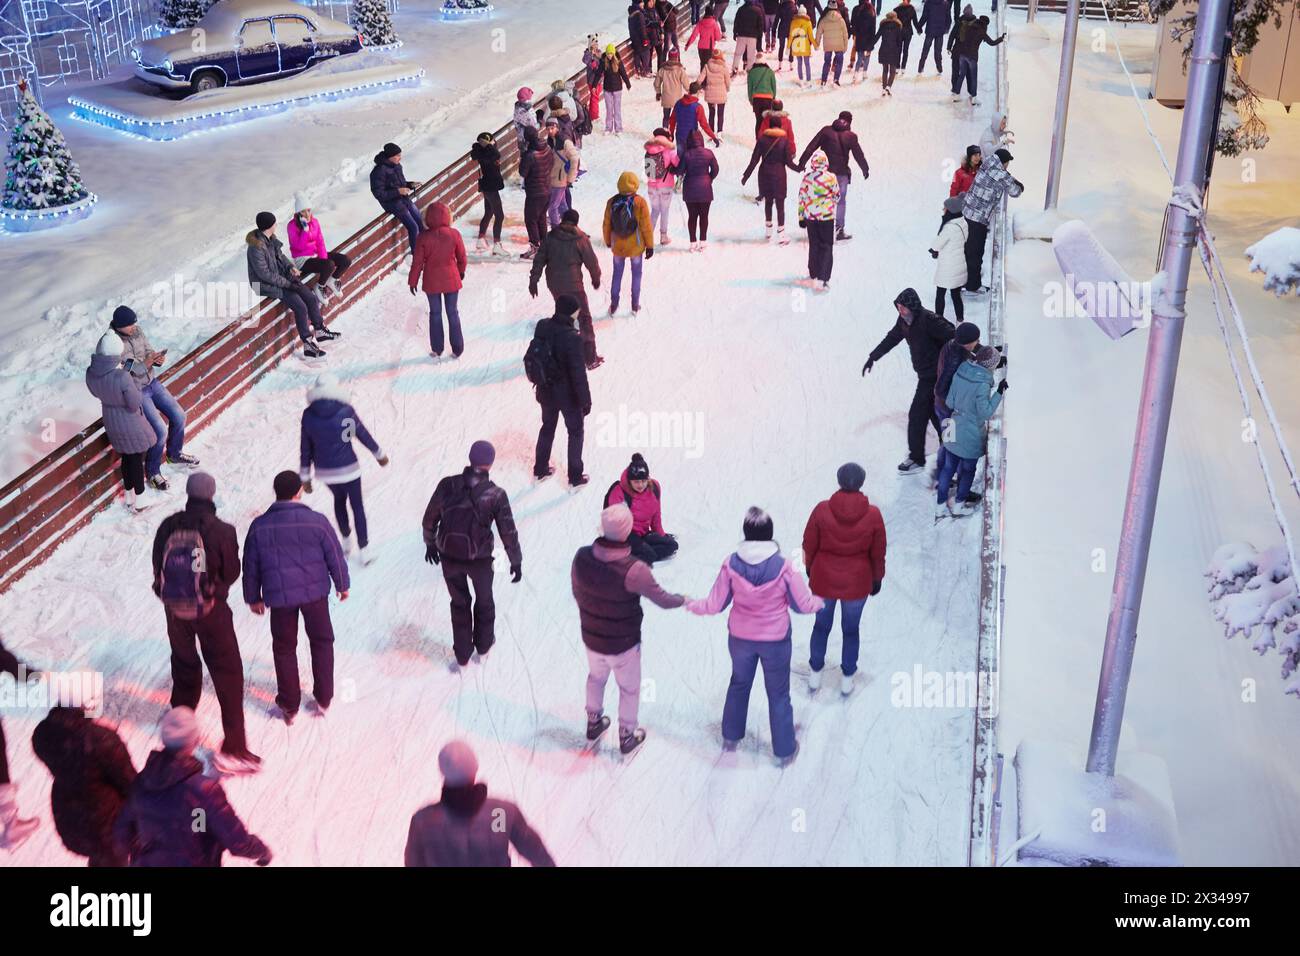 MOSKAU, RUSSLAND - 24. JAN 2015: Die Menschen haben sich abends auf der Eislaufbahn in der VDNKh ausgeruht. Die Eislaufbahn in VDNKh ist die größte Eislaufbahn Europas - ein Gebiet Stockfoto